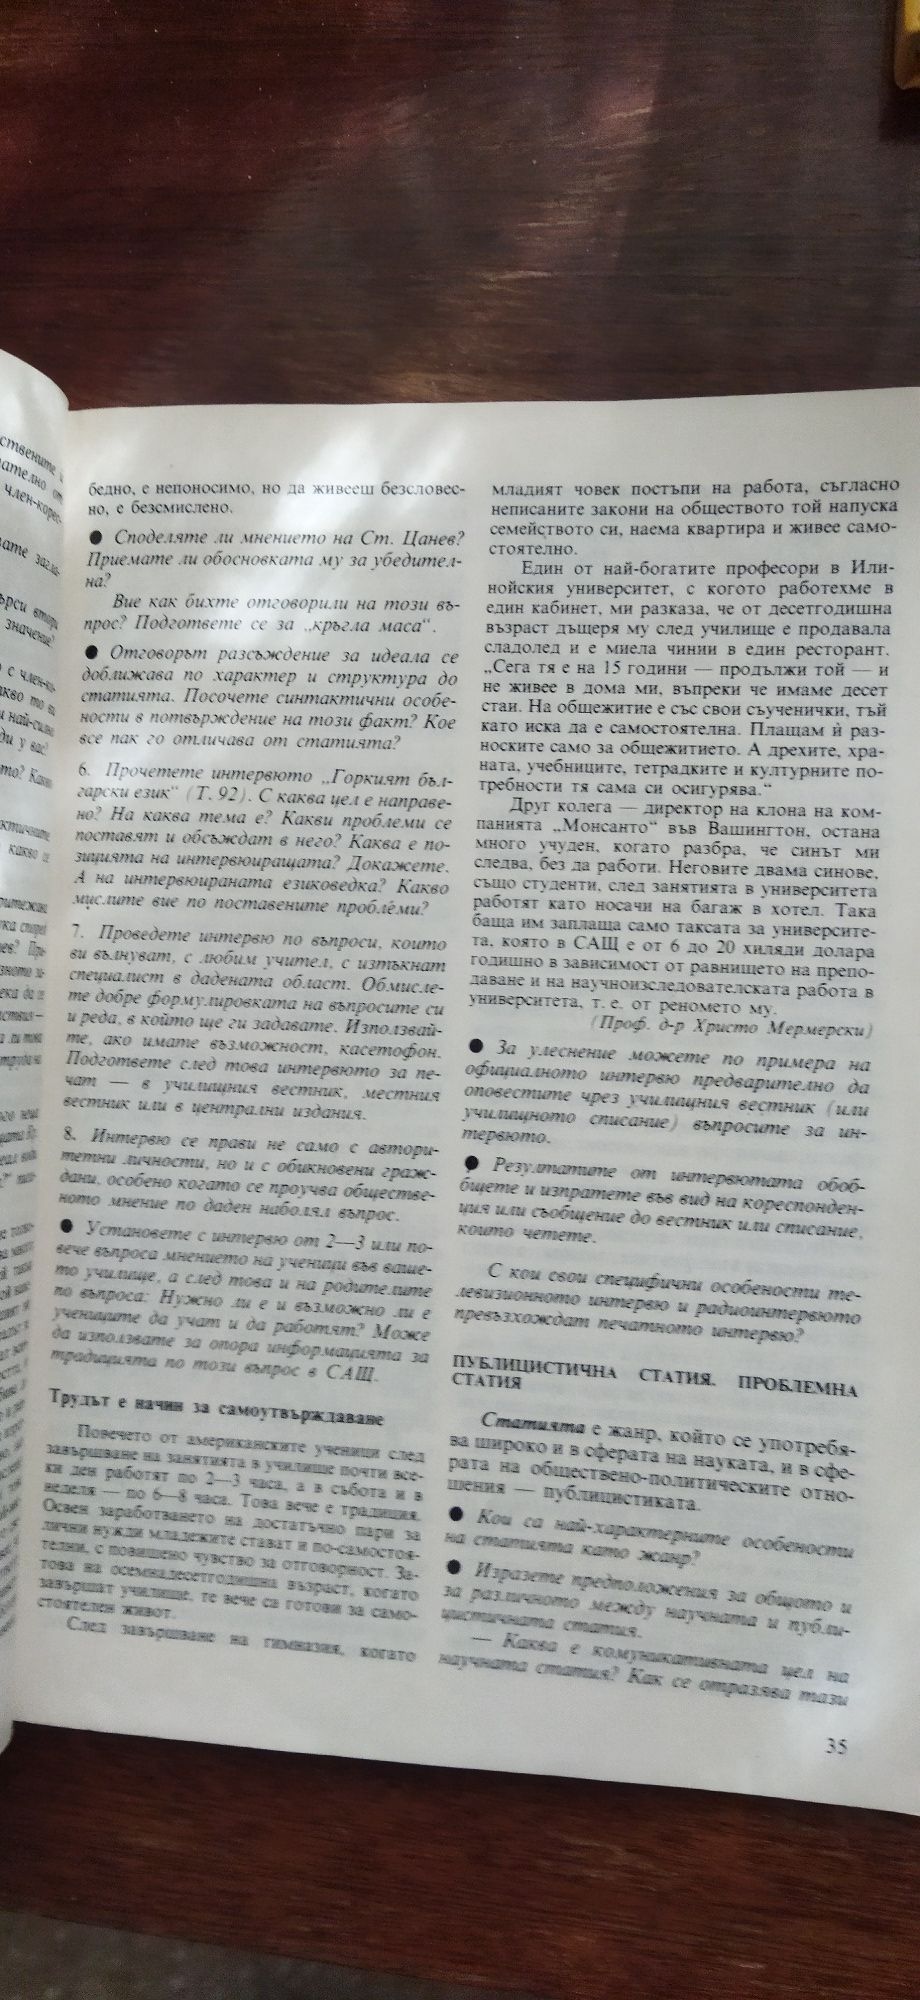 Български език 1994 г.